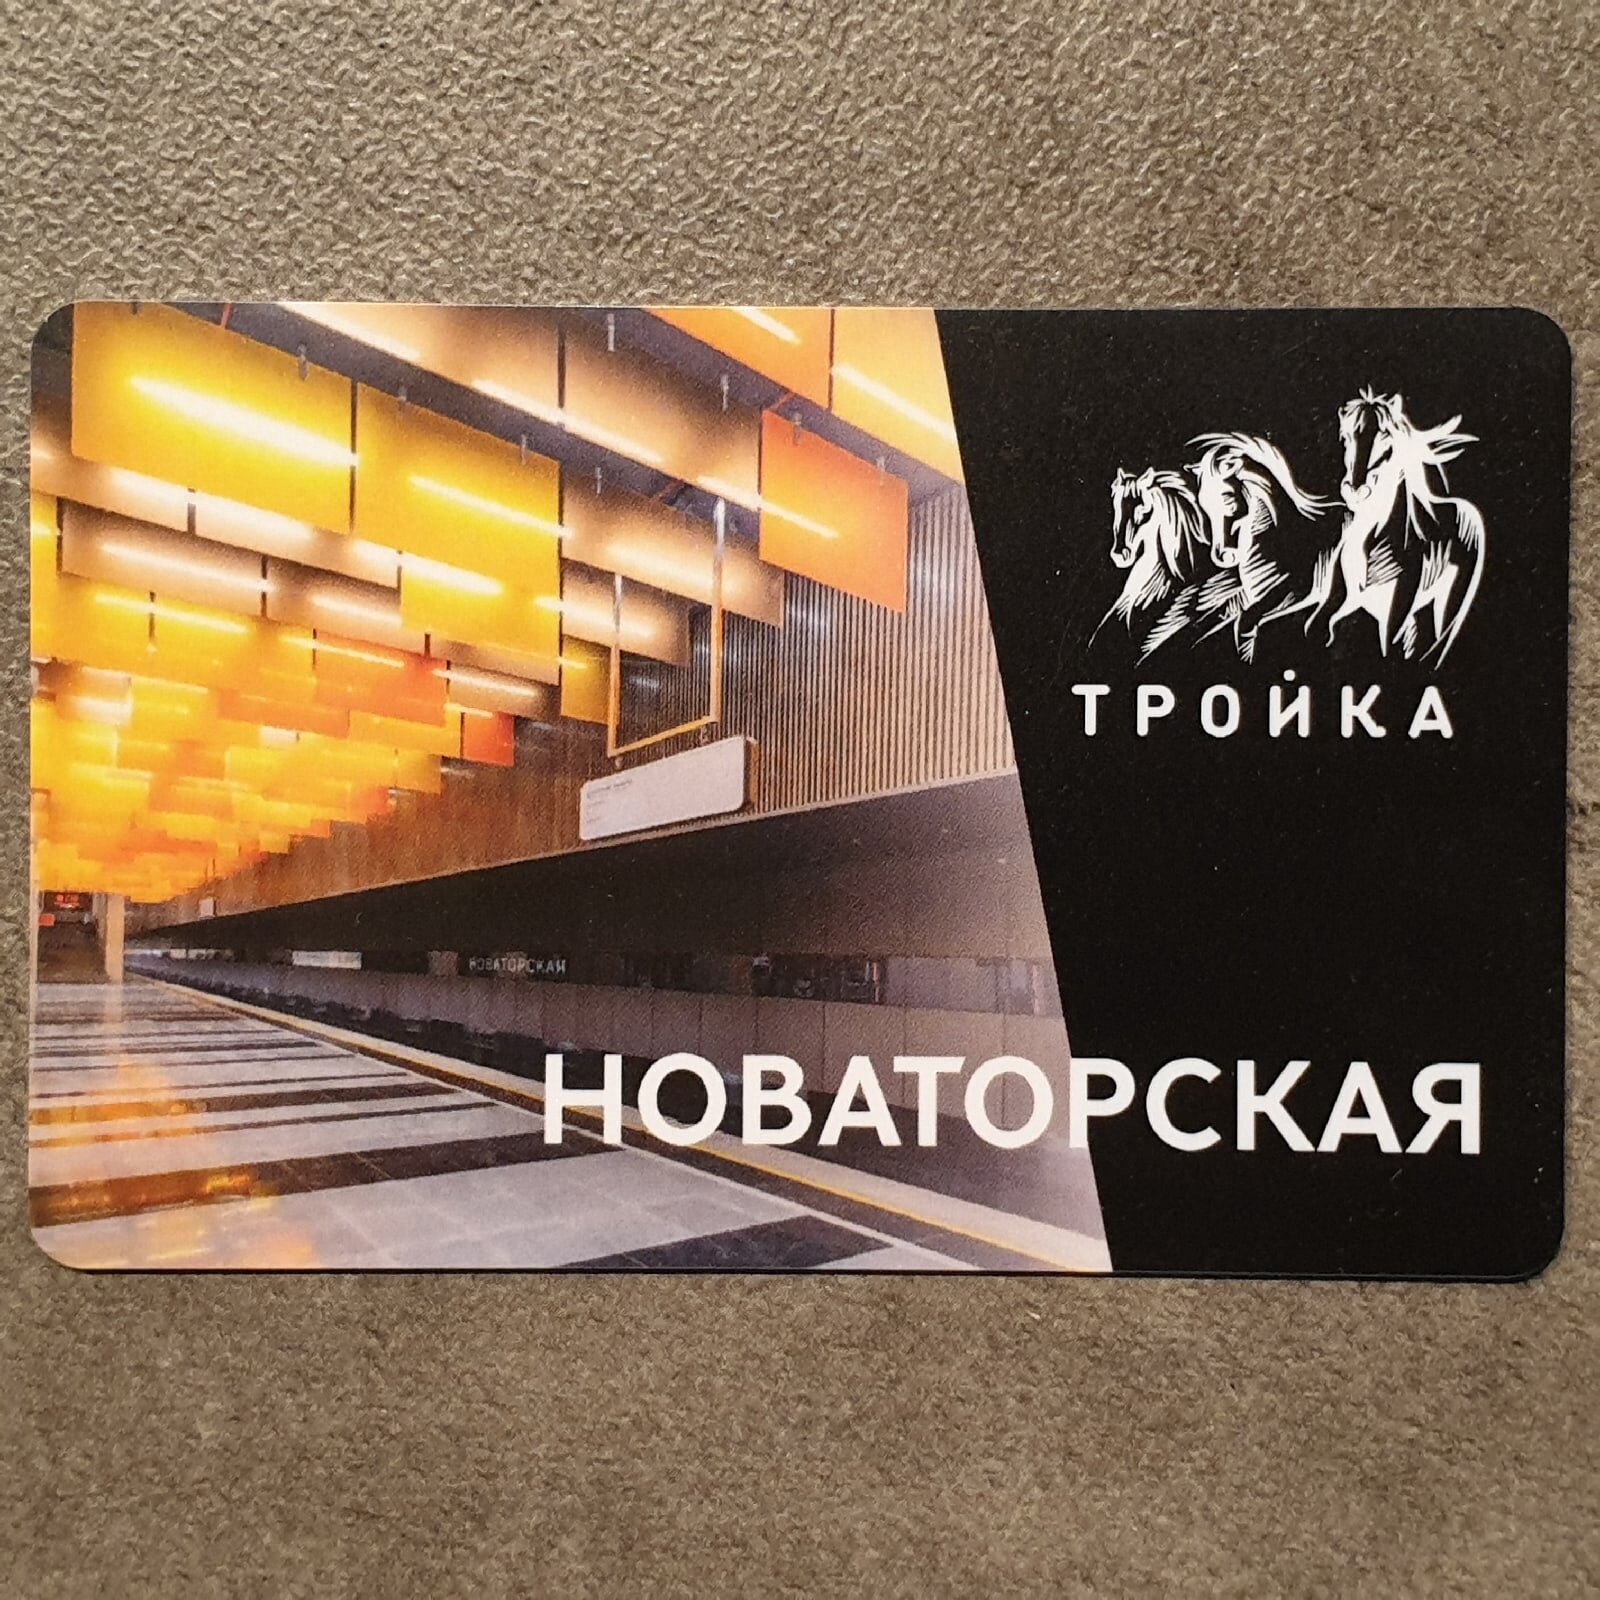 Транспортная карта Тройка - открытие станции метро Новаторская 2021